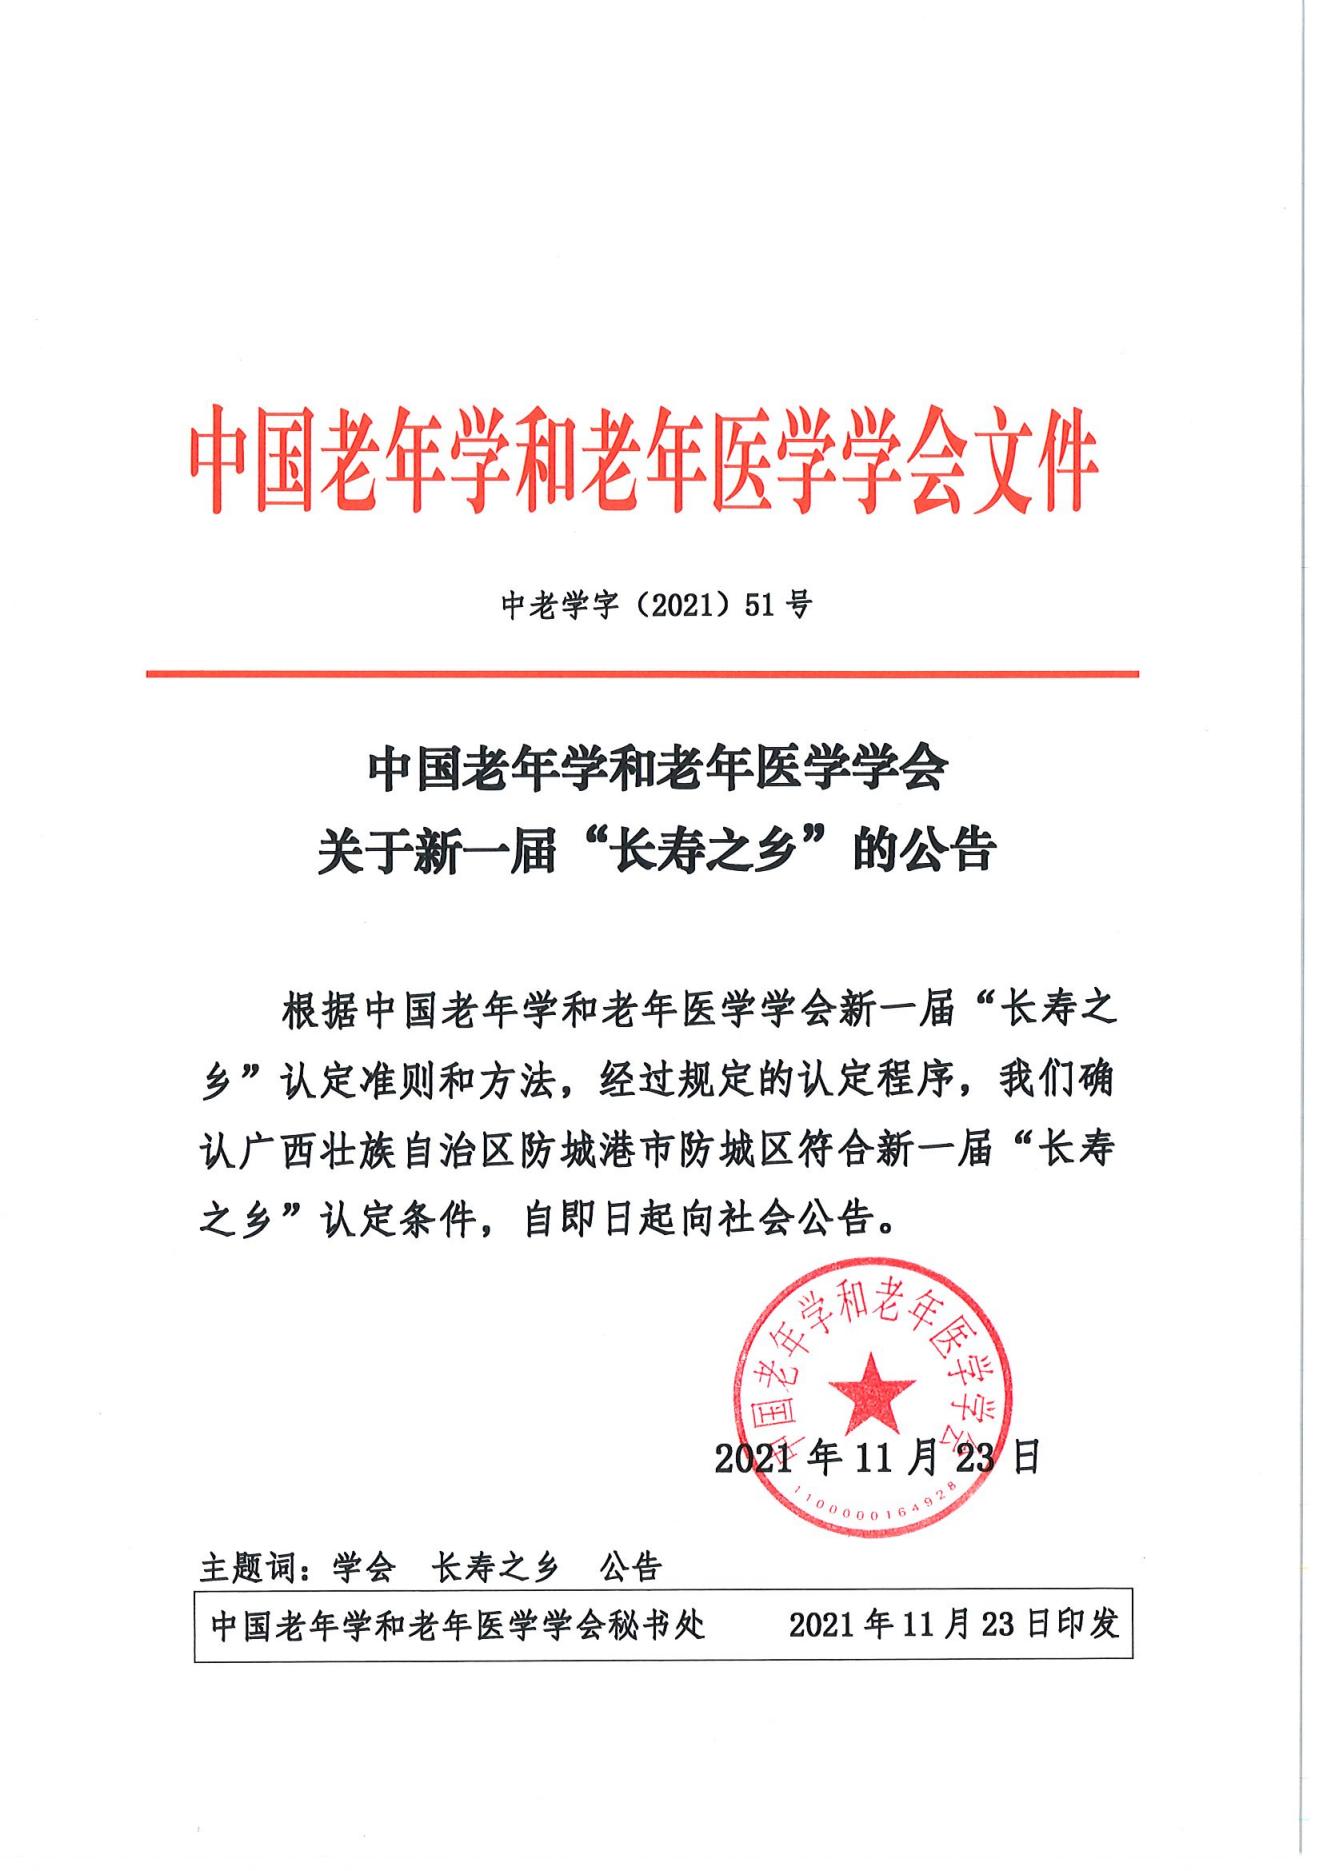 （51号）中国老年学和老年医学学会关于新一届“长寿之乡”的公告_00.jpg